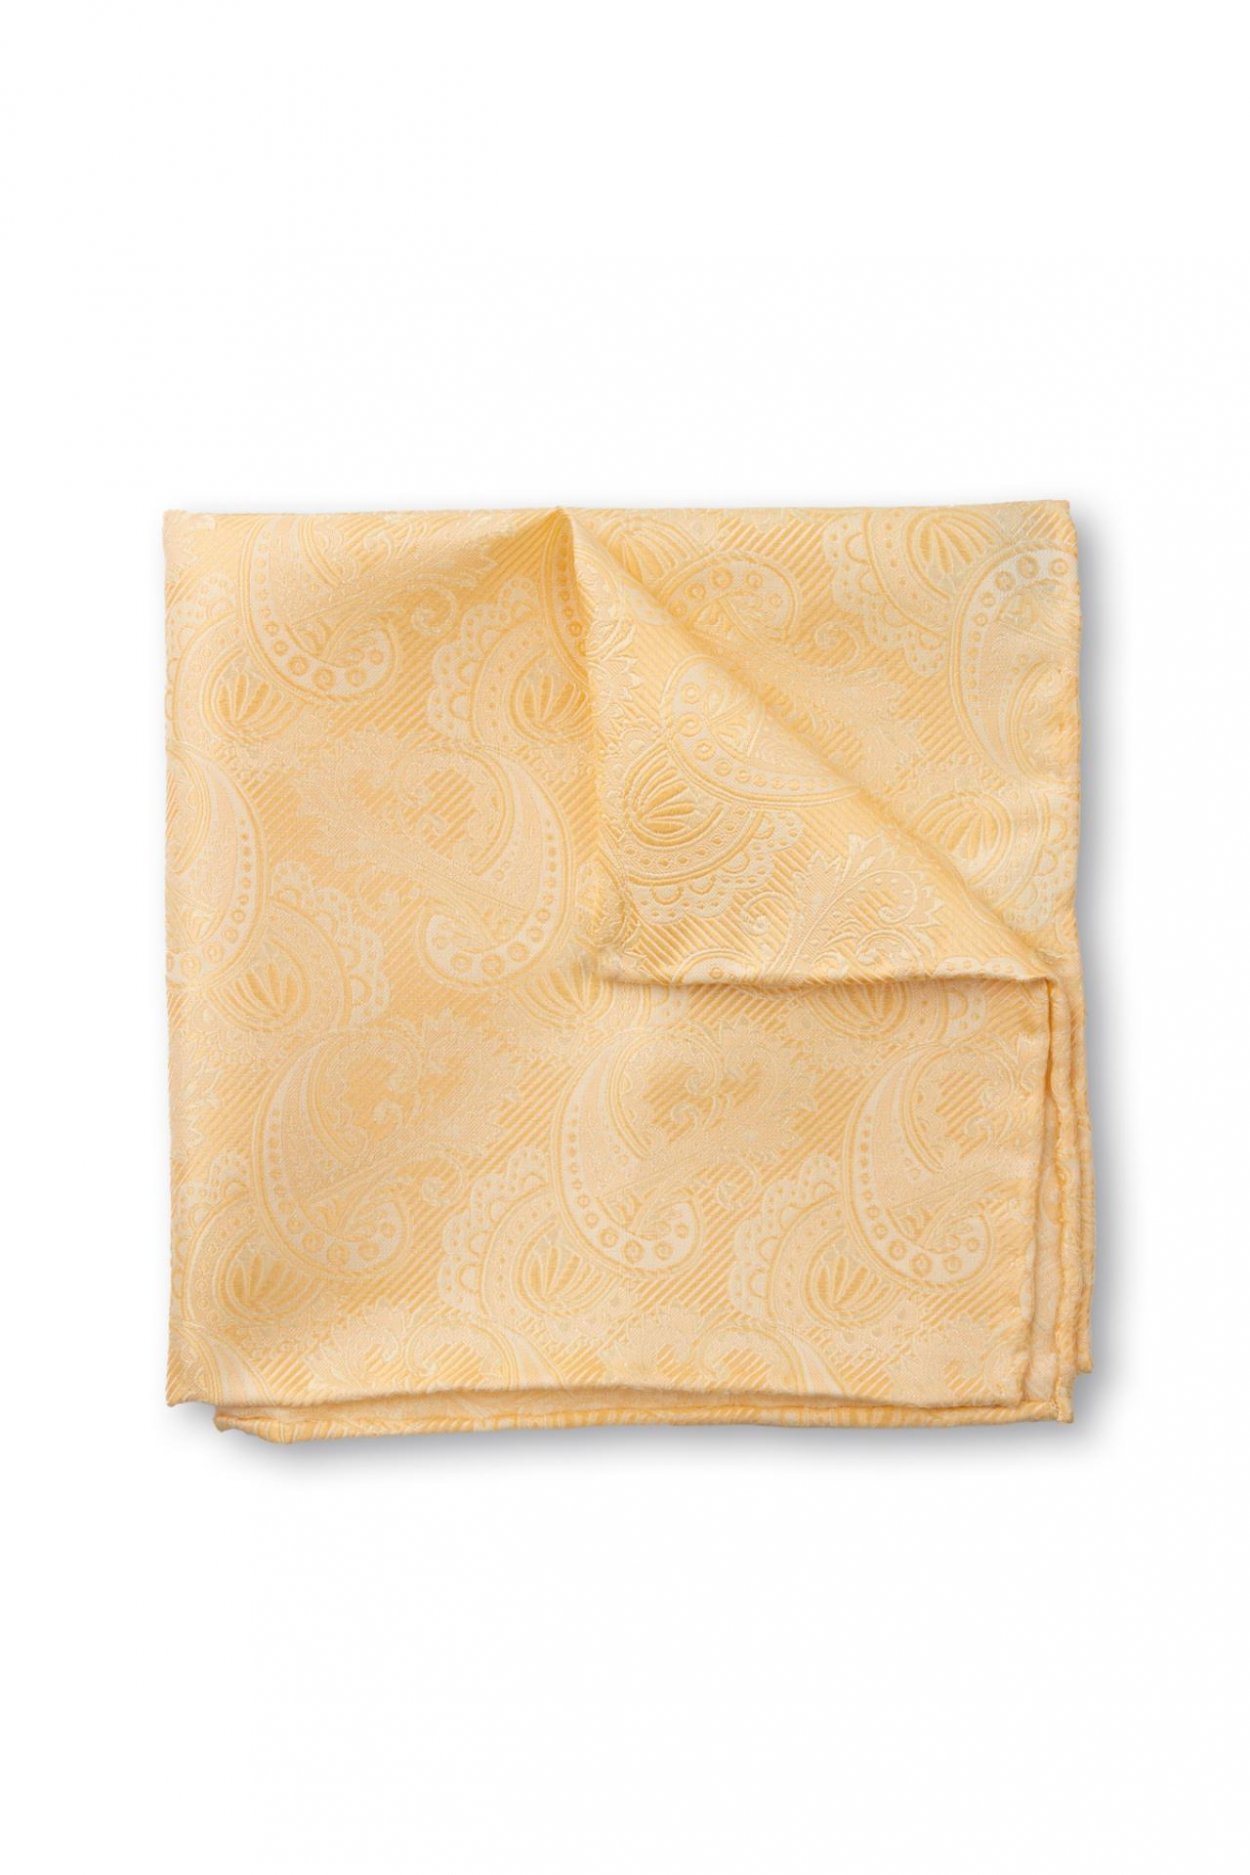 Žlutý hedvábný kapesníček s jemným vzorem